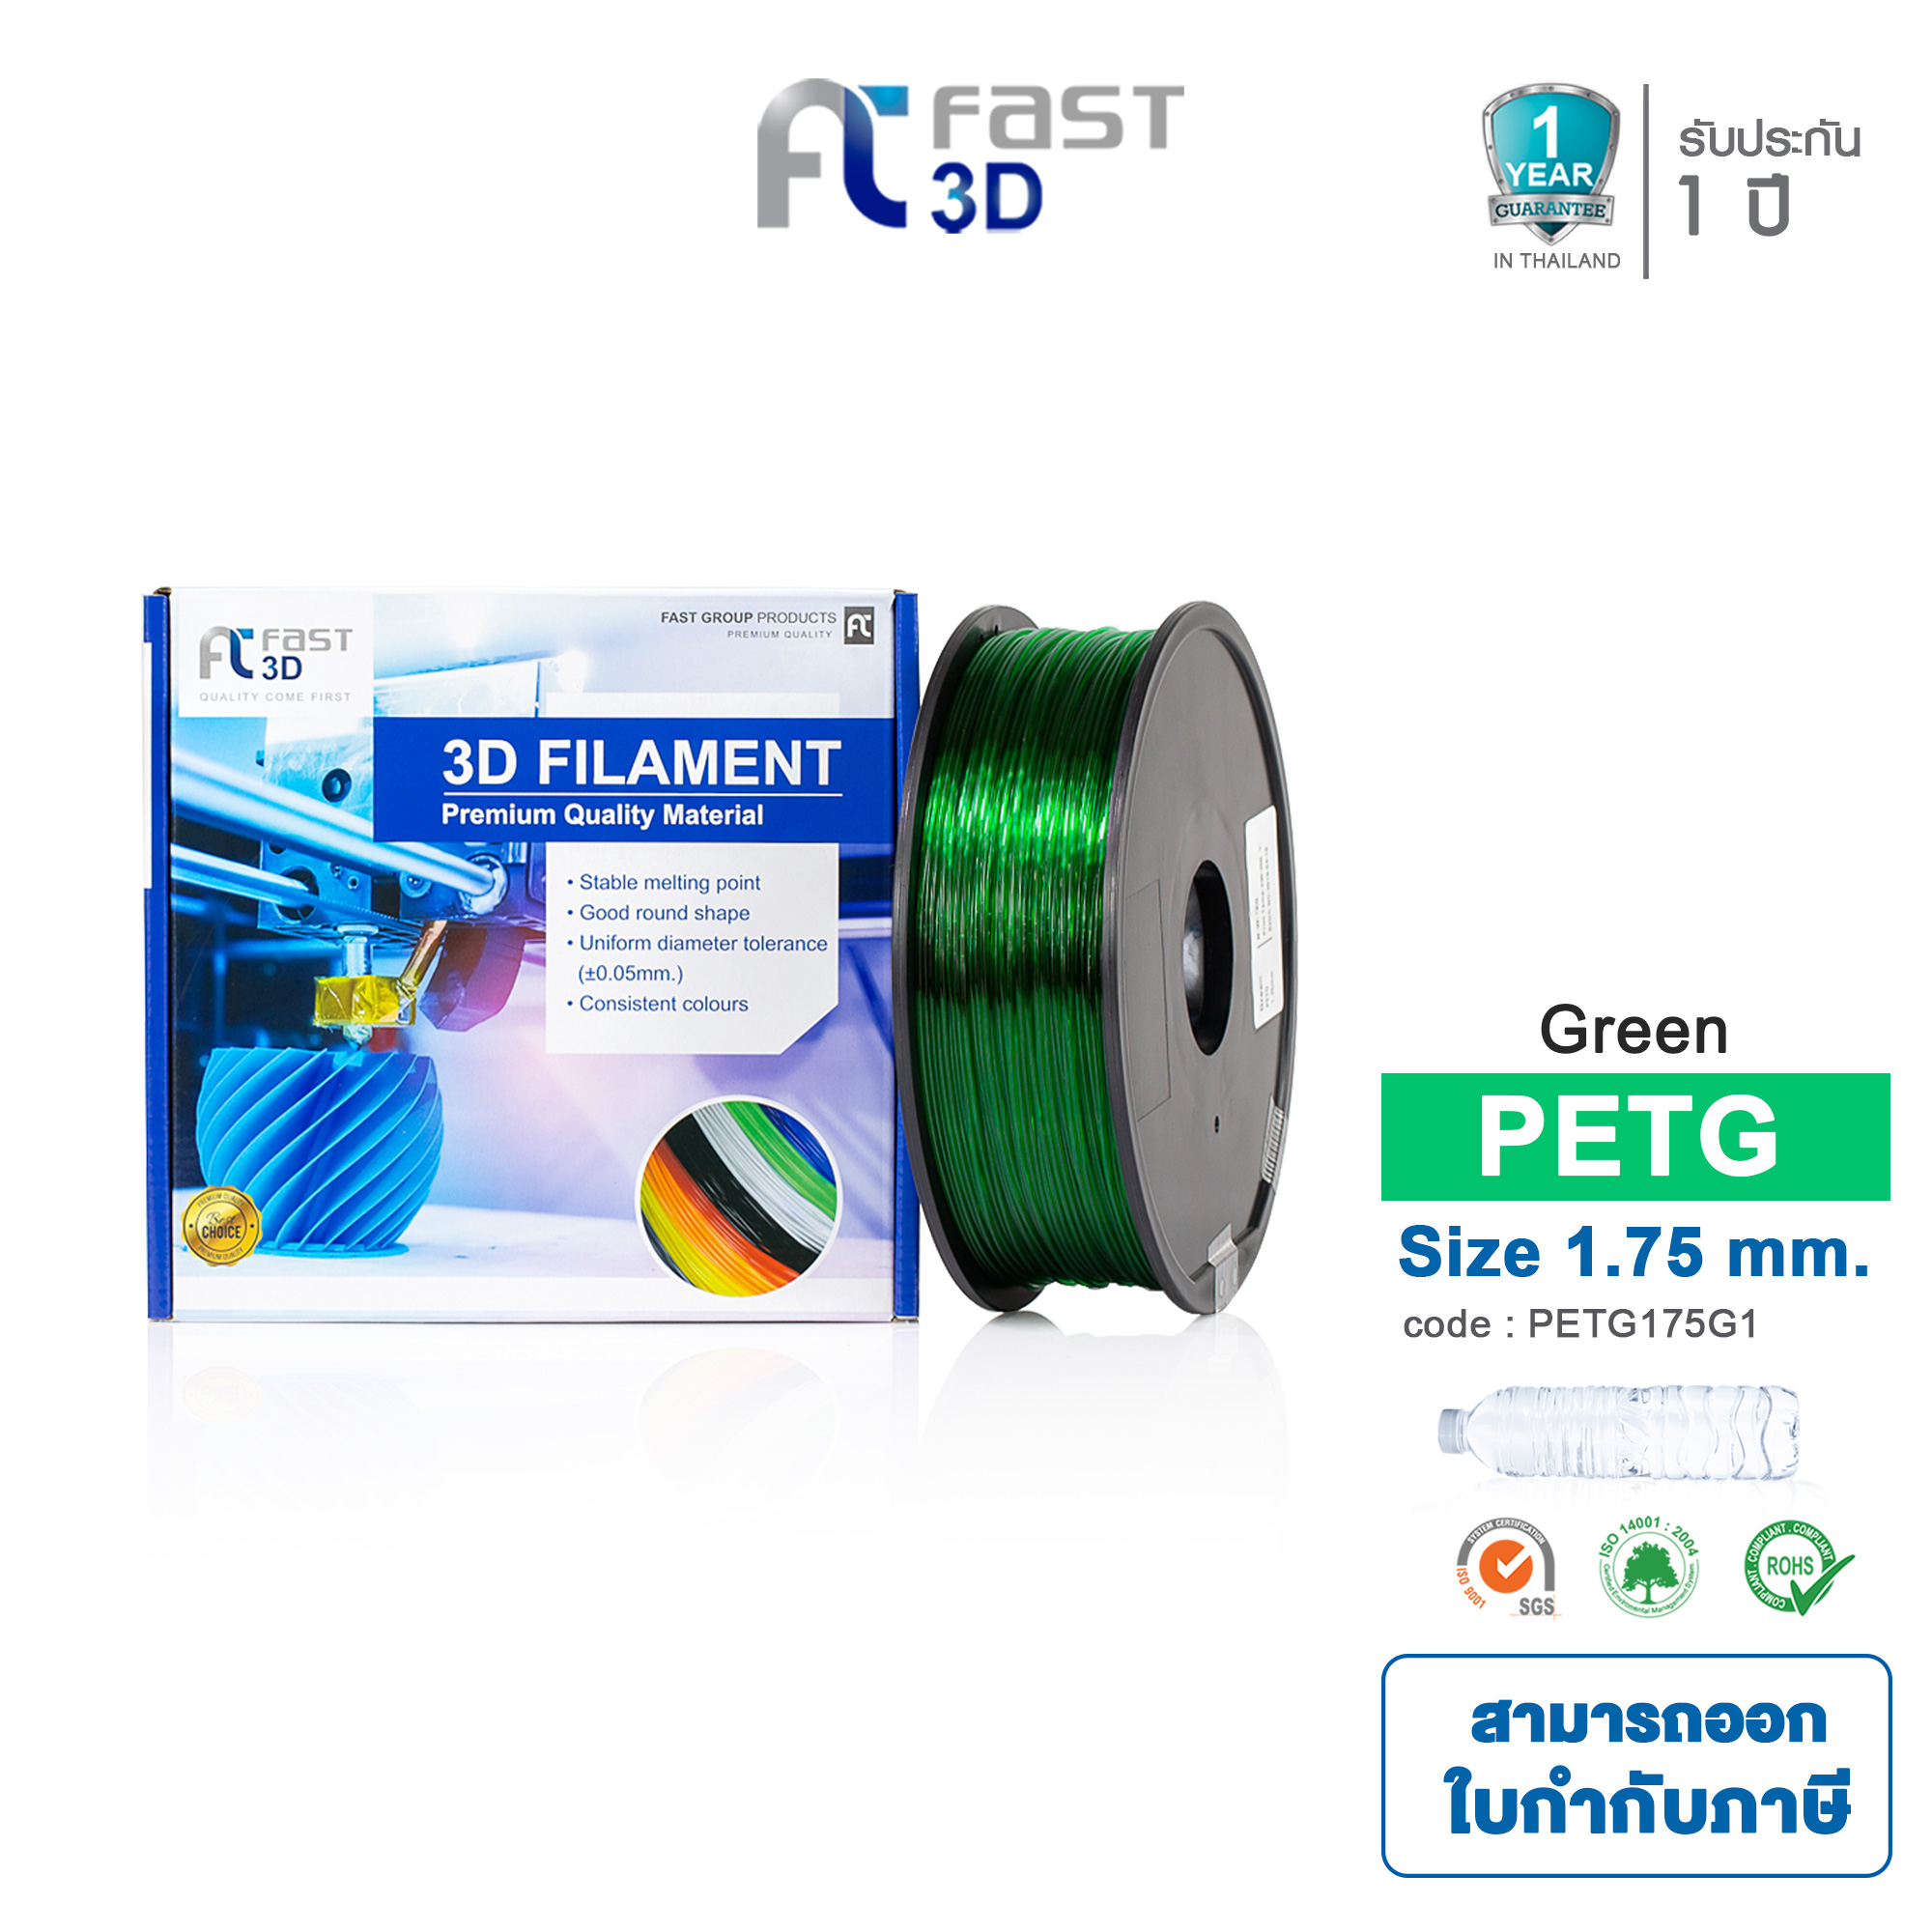 Filament PETG 1.75mm ใยพลาสติก มีหลายสีให้เลือก / filament / เส้นพลาสติก /เส้นใยพลาสติก for 3D Printer 1 kg. ใช้กับเครื่องพิมพ์ 3 มิติ เครื่องปริ้น 3 มิติ - Fast 3D